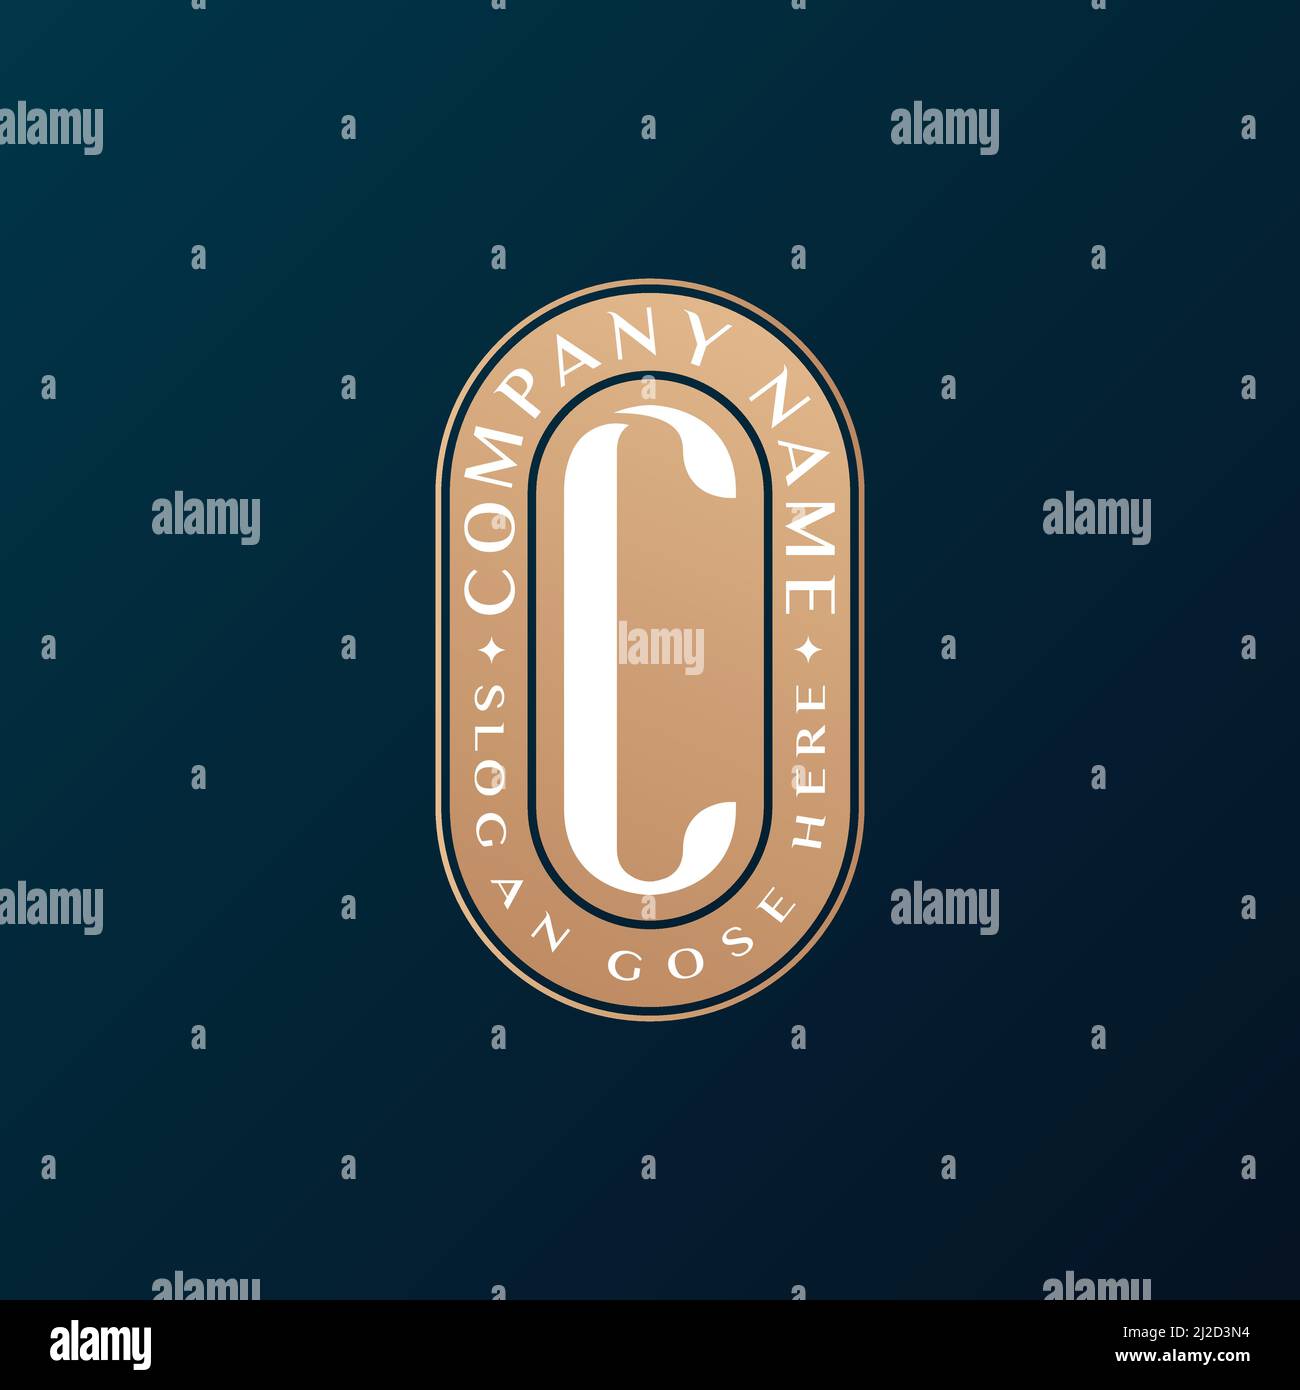 Abstrait Emblem Premium luxe identité d'entreprise élégant lettre C logo design Illustration de Vecteur